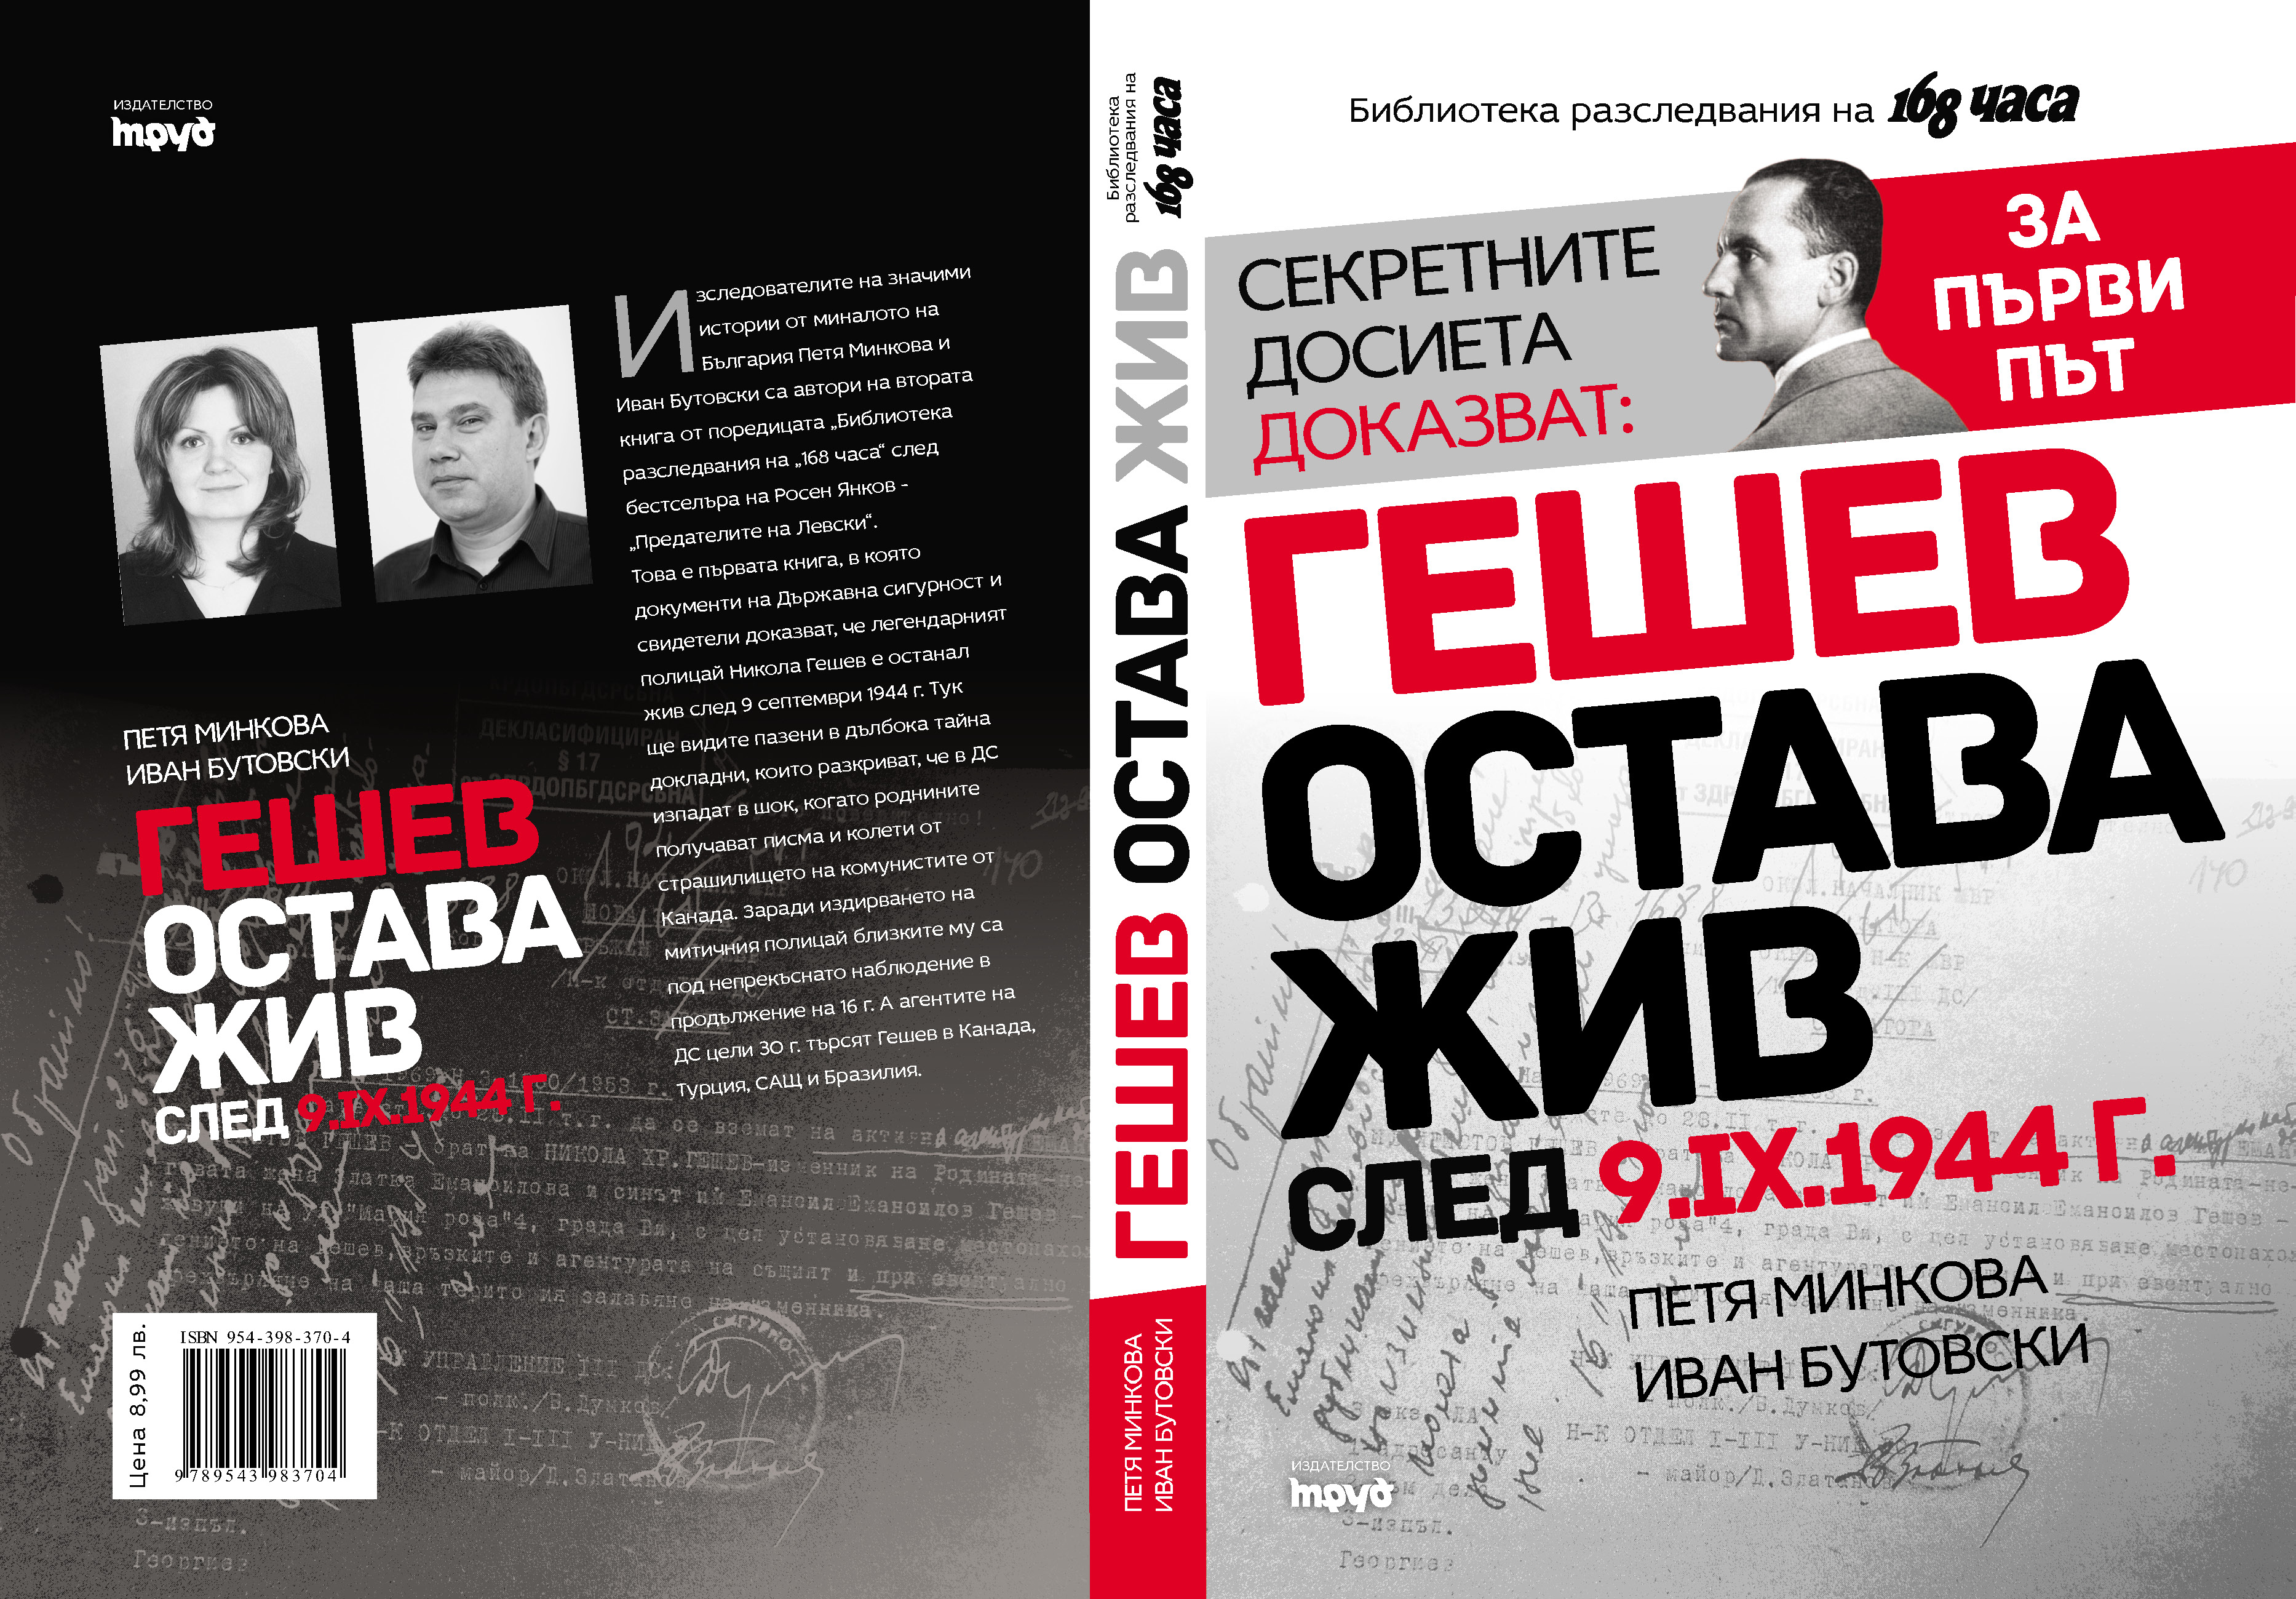  Повече за обира може да прочетете в книгата "Гешев остава жив след 9.9.1944 г." на изд. "Труд". 